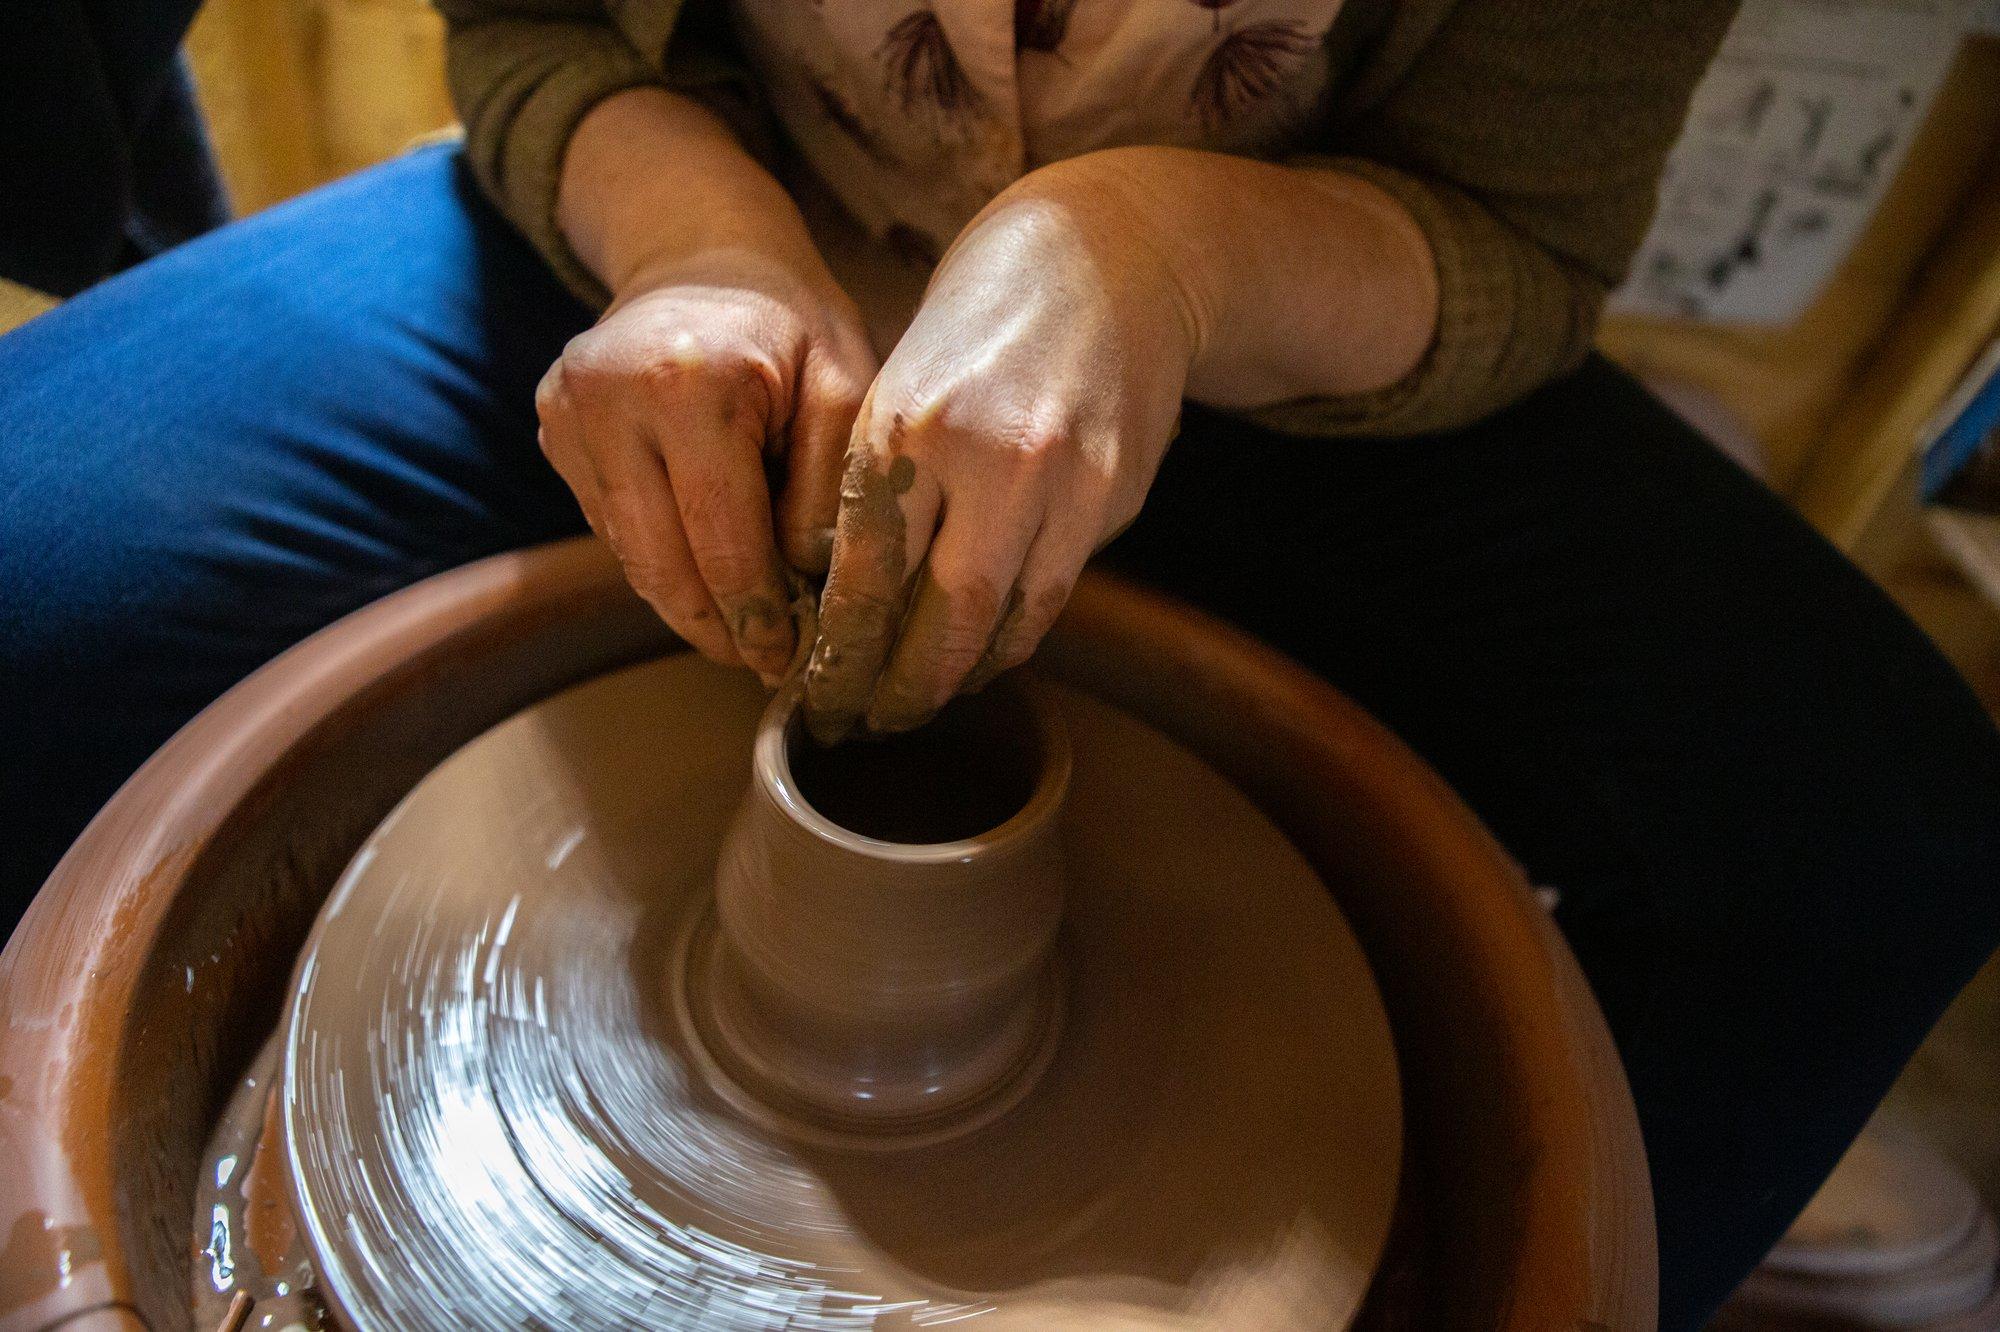 Ross est potière à Florenceville-Bristol, au Nouveau-Brunswick, à environ 90 minutes de route au nord-ouest de Fredericton, et travaille également dans son propre atelier de poterie.